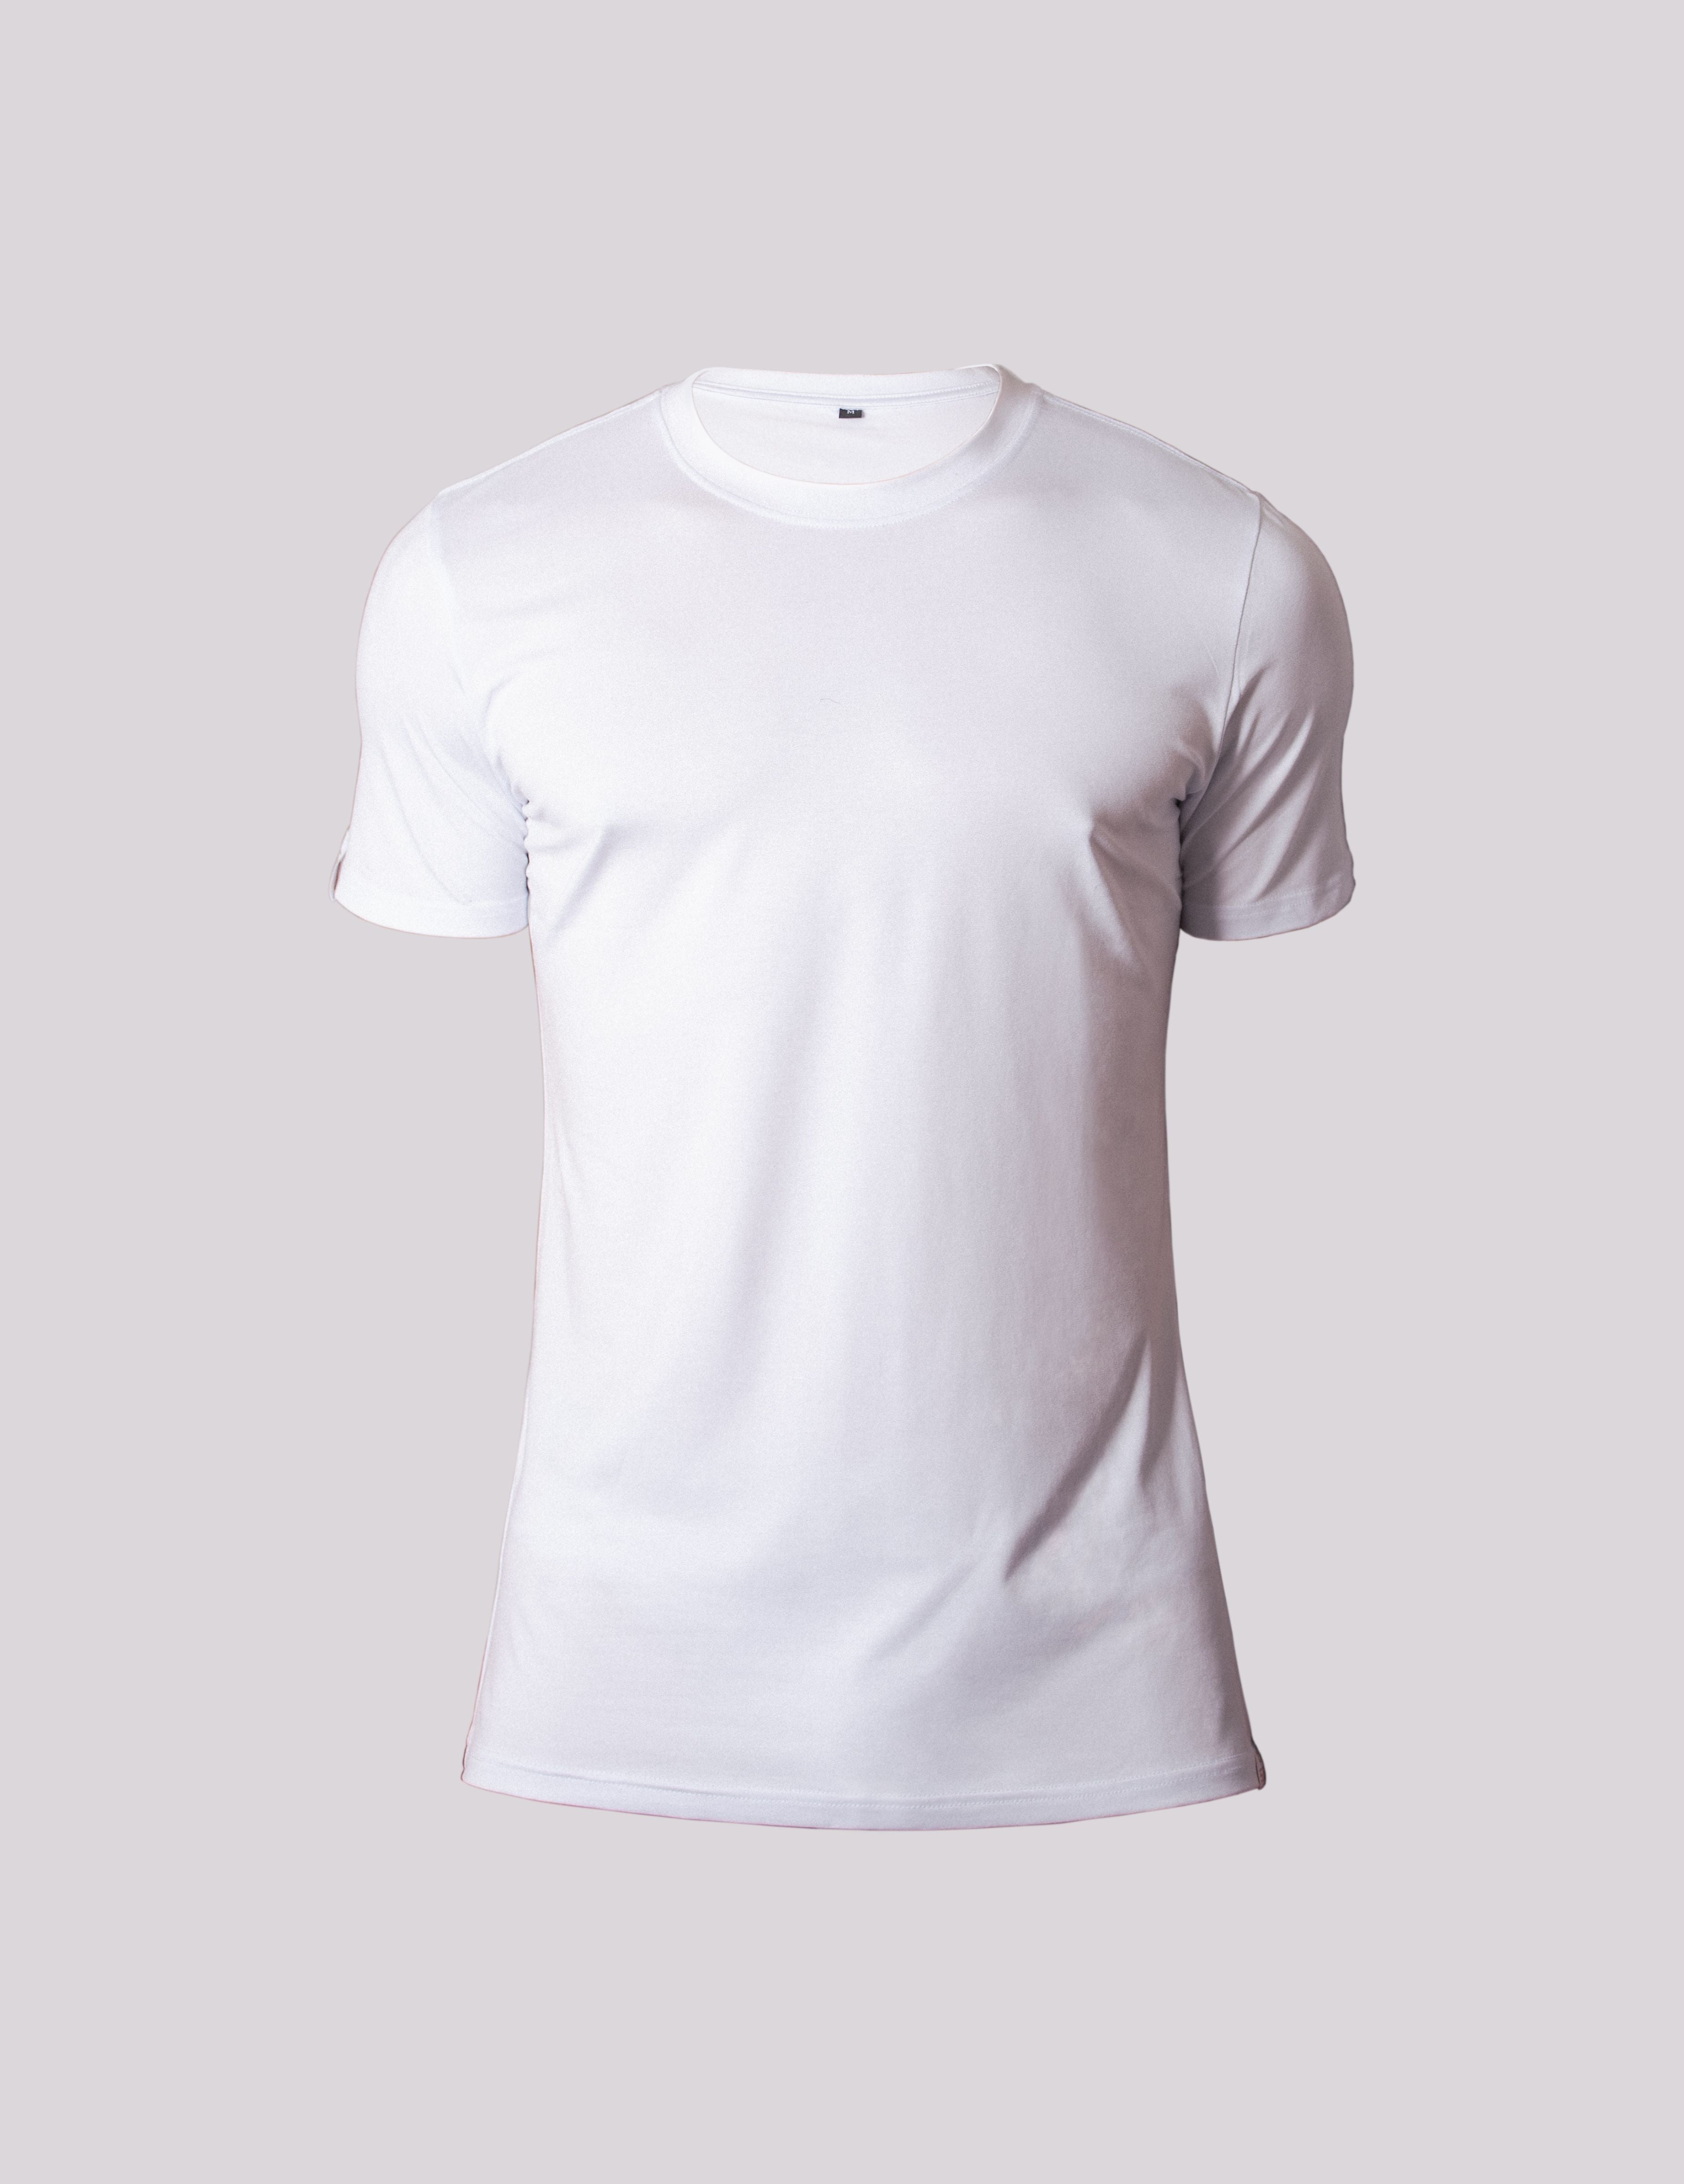 Luxe Men's White T-Shirt